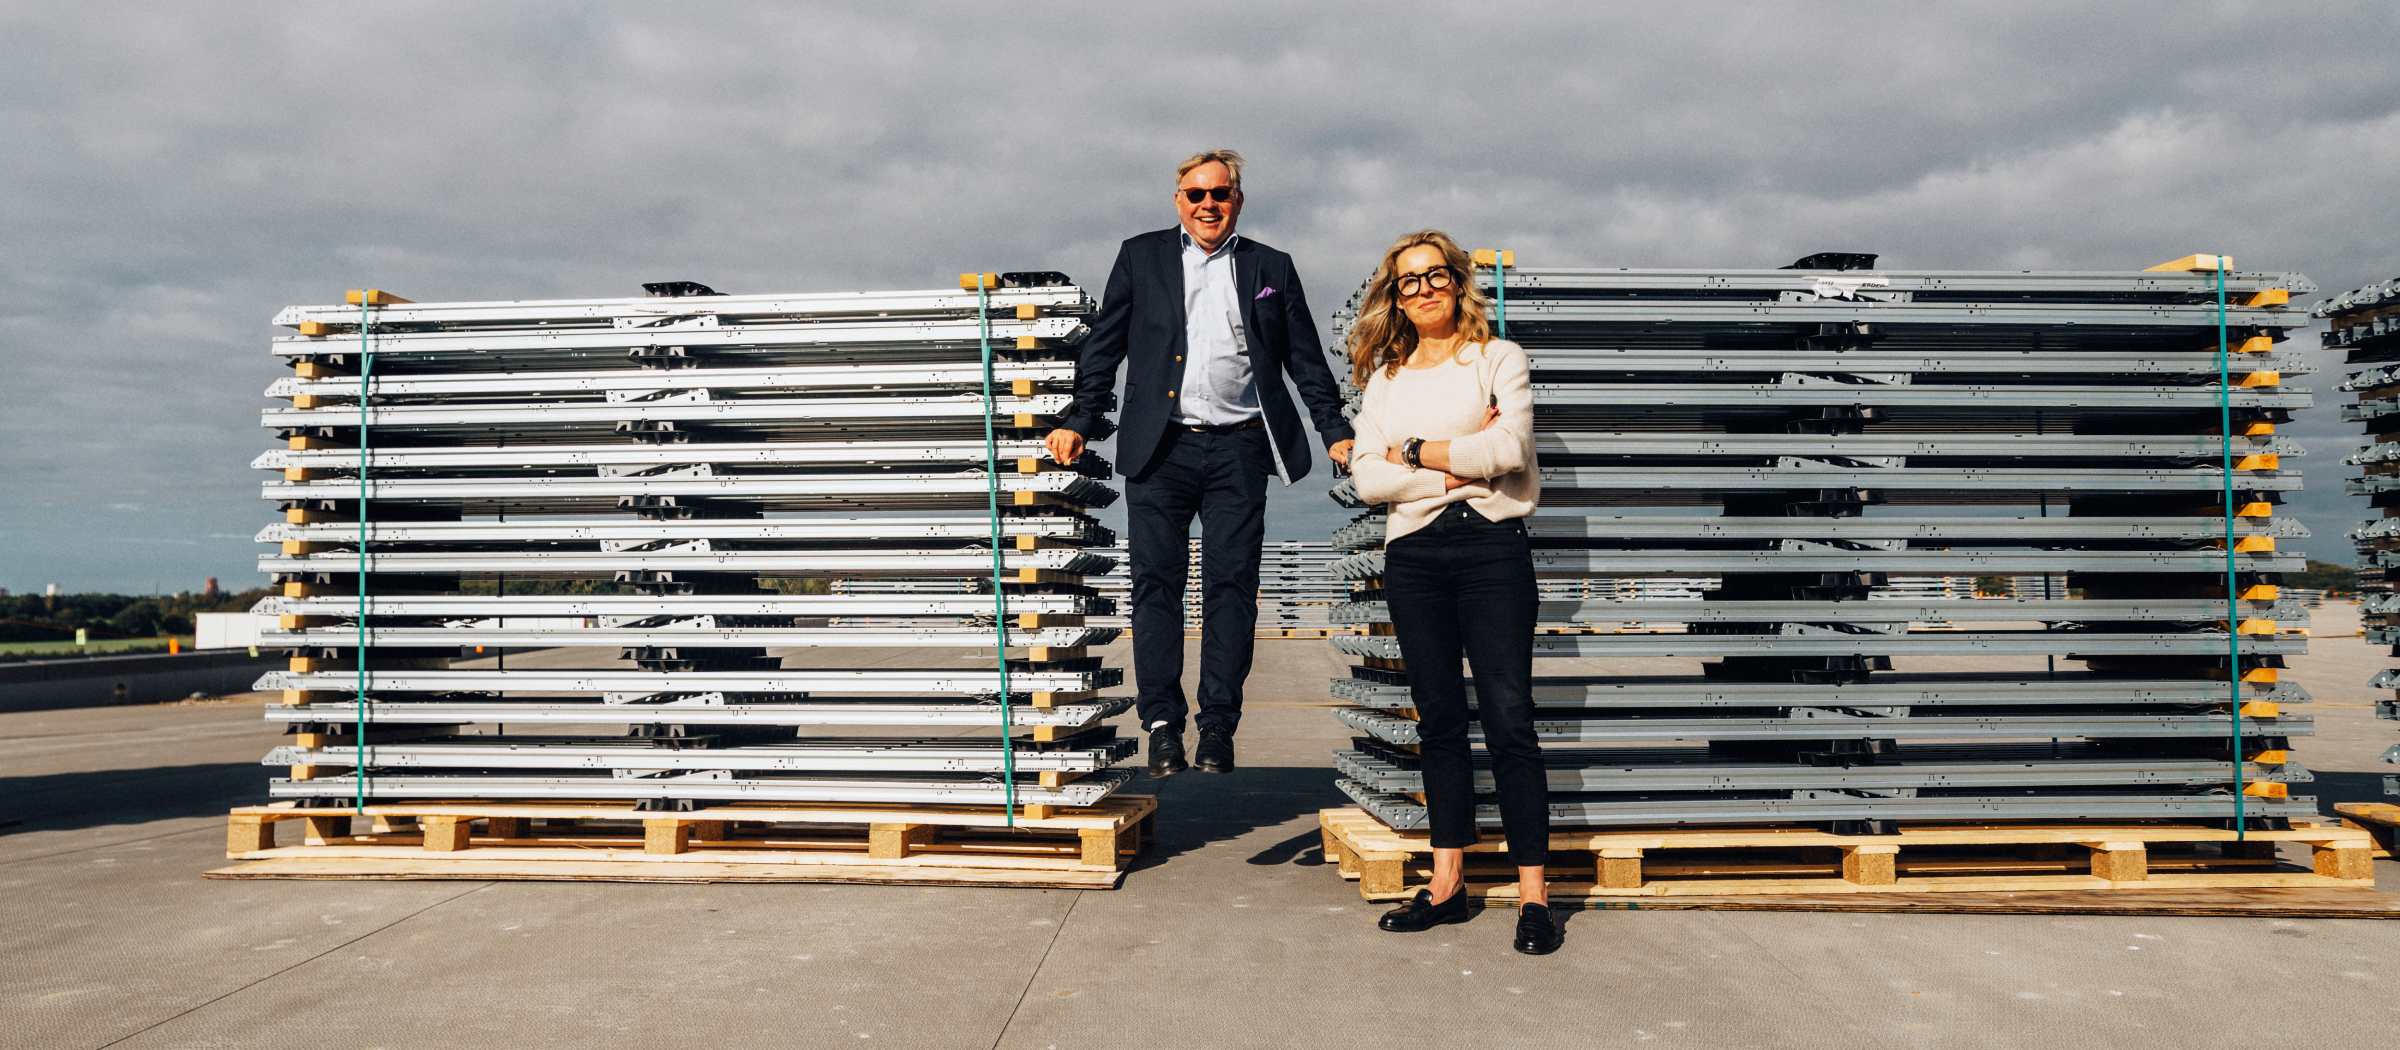 Greenfoods hållbarhetschef Anna Klenell och VD Ted Stenshed på Greenhouse tak, försett med solceller.